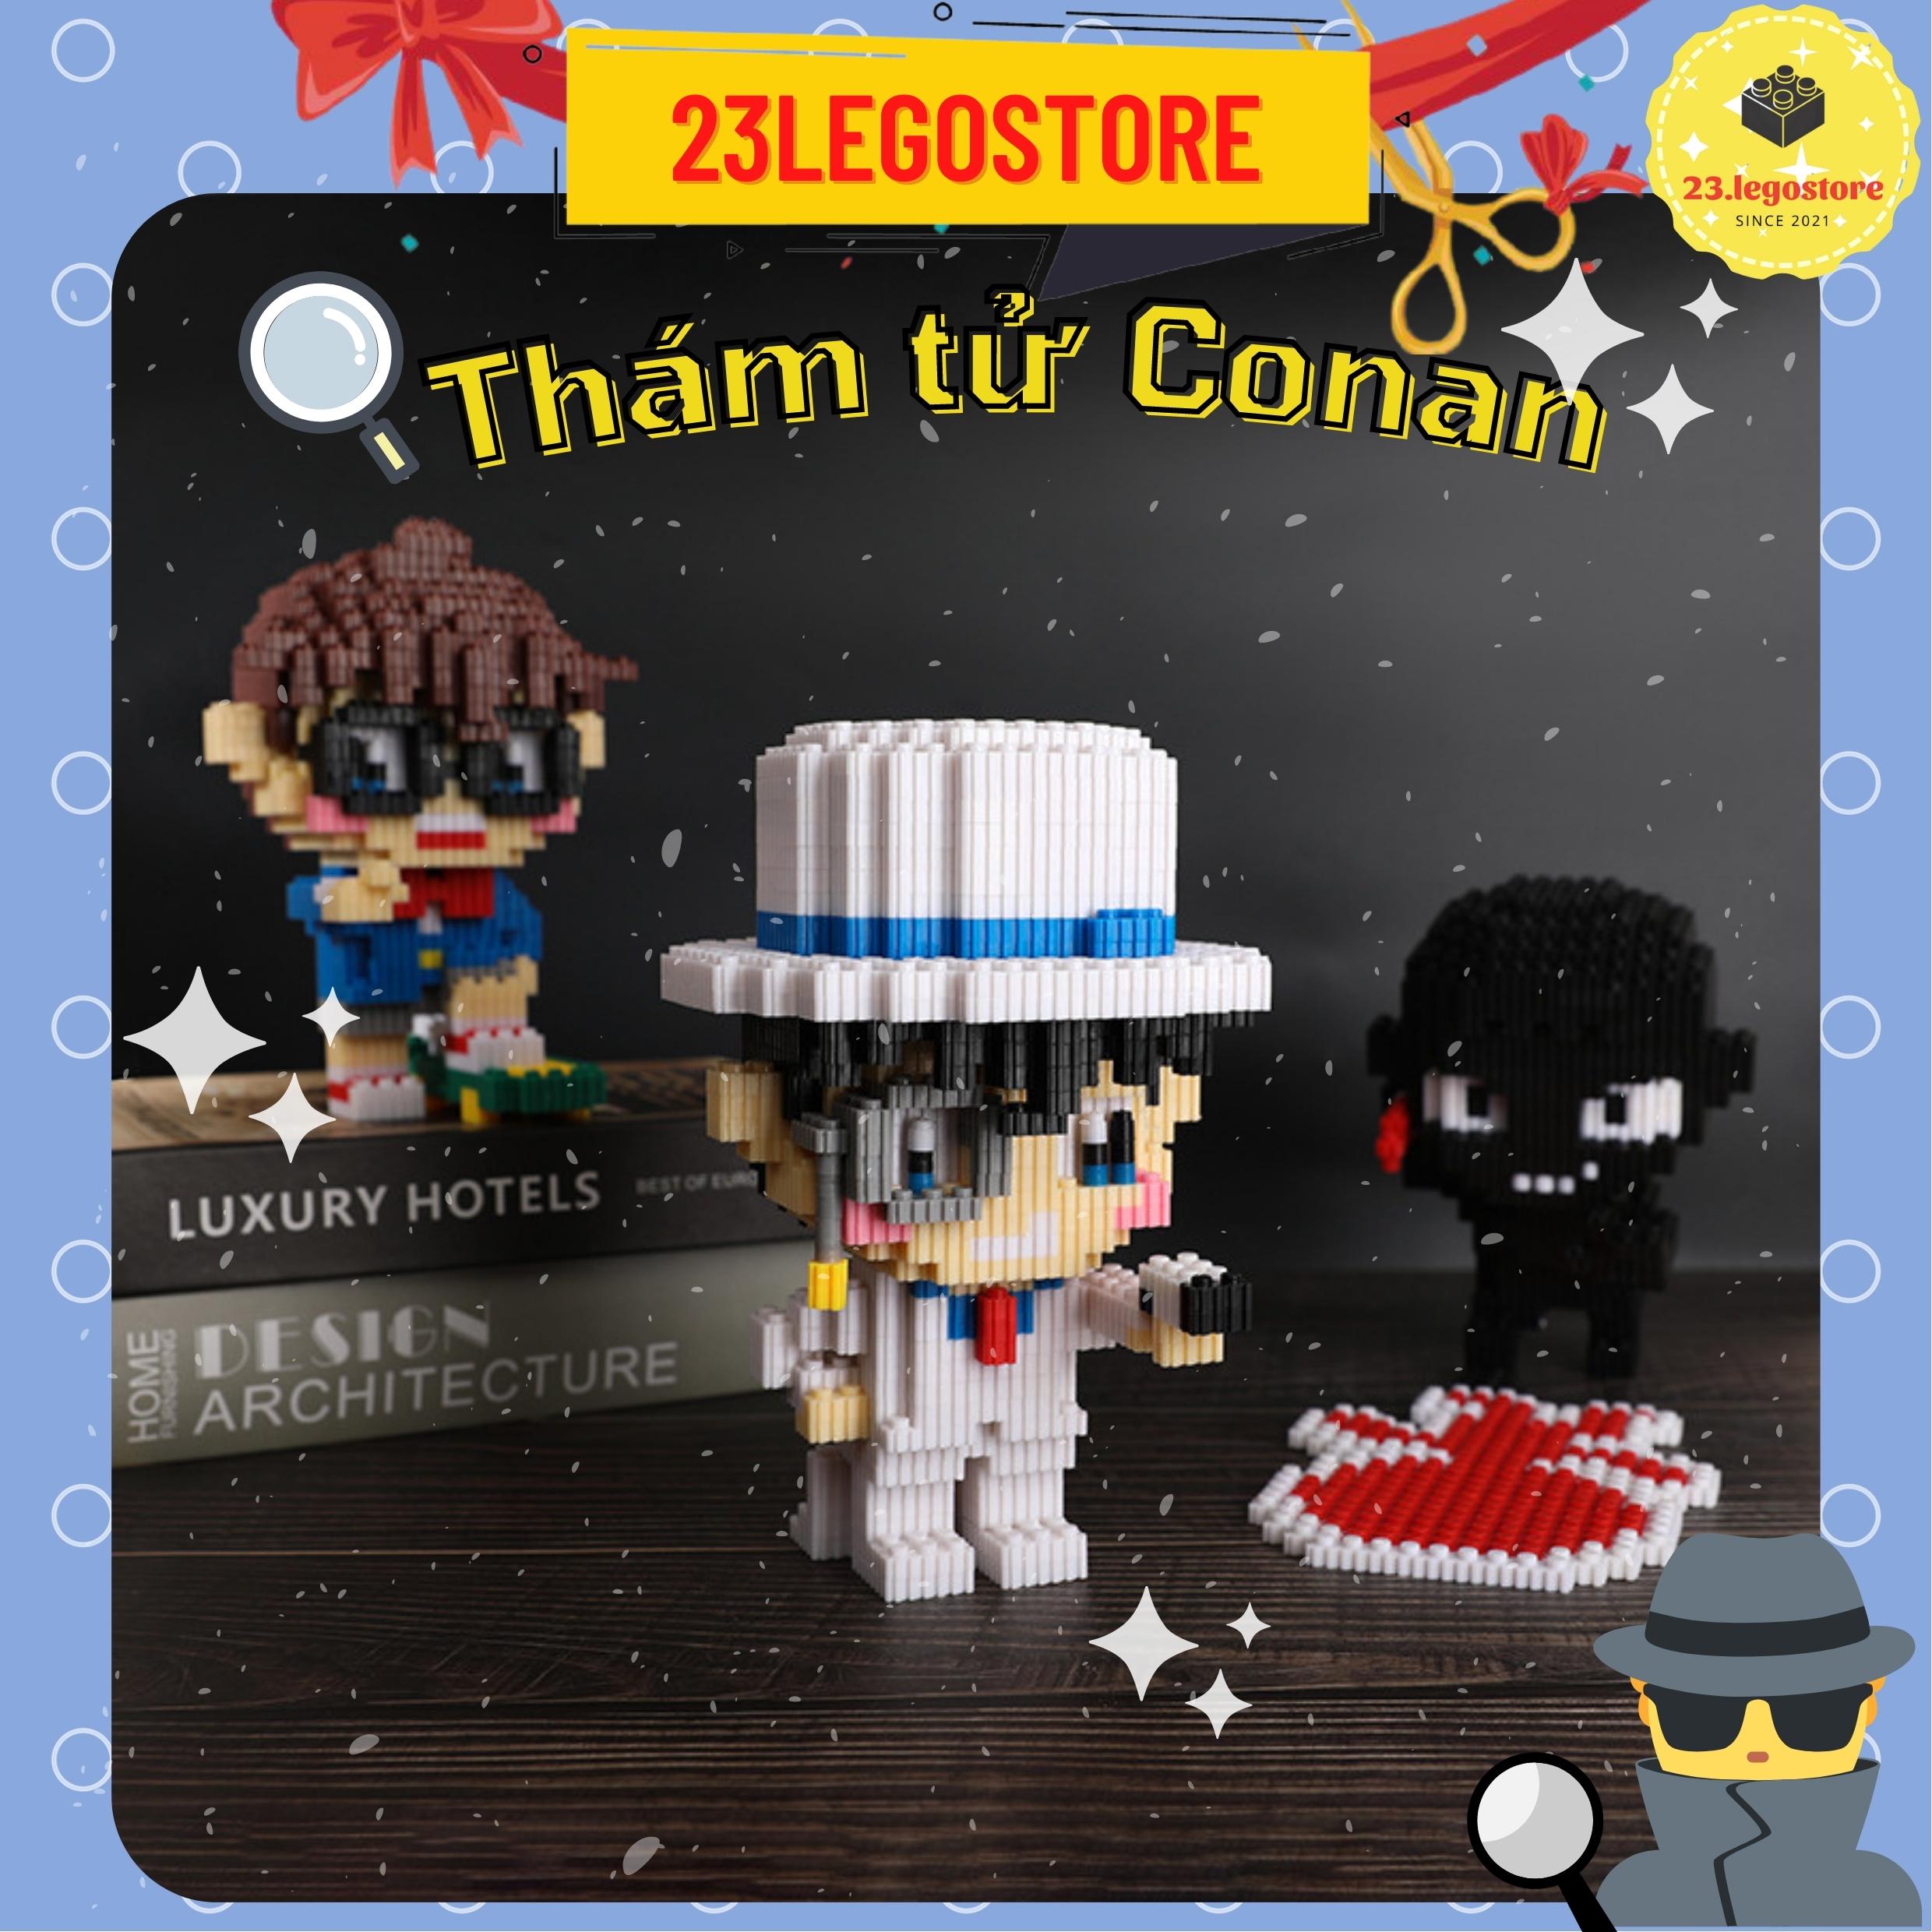 Bộ đồ chơi lắp ghép Lego nhân vật Conan và Anh da đen,Bộ đồ chơi lắp ráp nhân vật truyện thám tử Conan